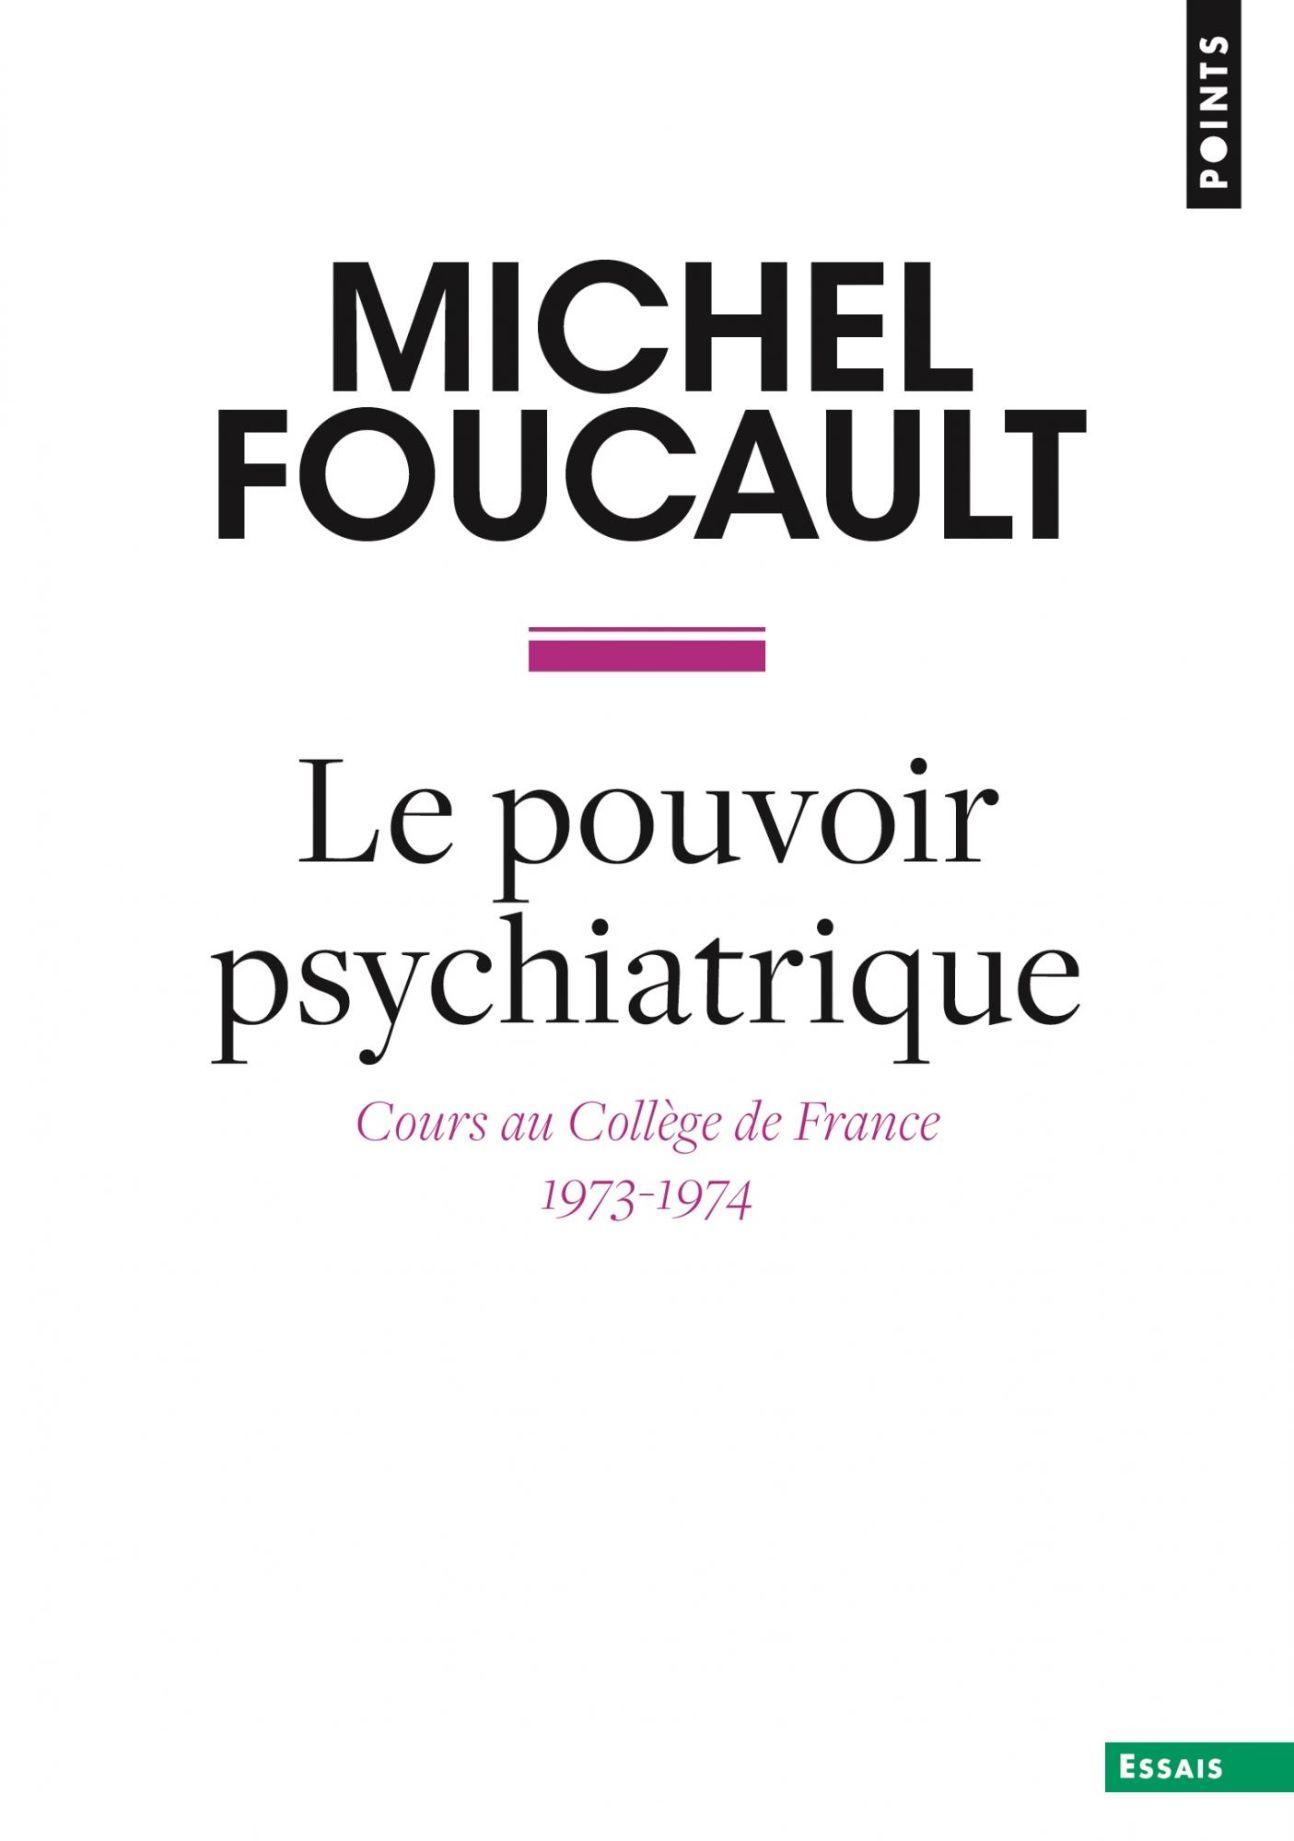 Michel Foucault, Le Pouvoir psychiatrique. Cours au Collège de France (1973-1974)